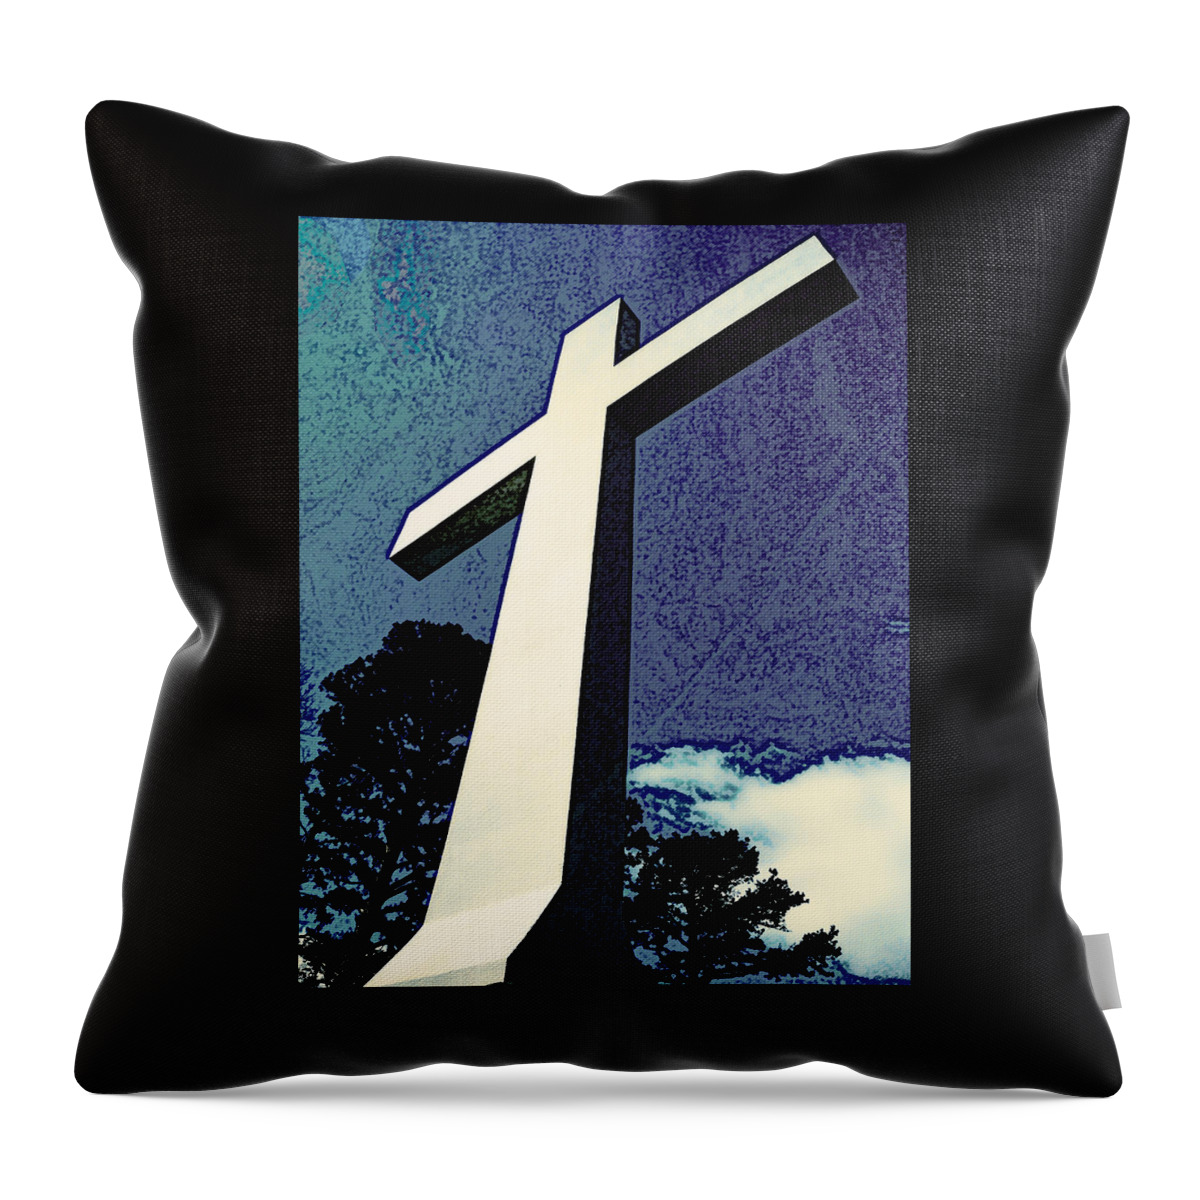 Sewanee Throw Pillow featuring the digital art Sewanee Cross by Rod Whyte